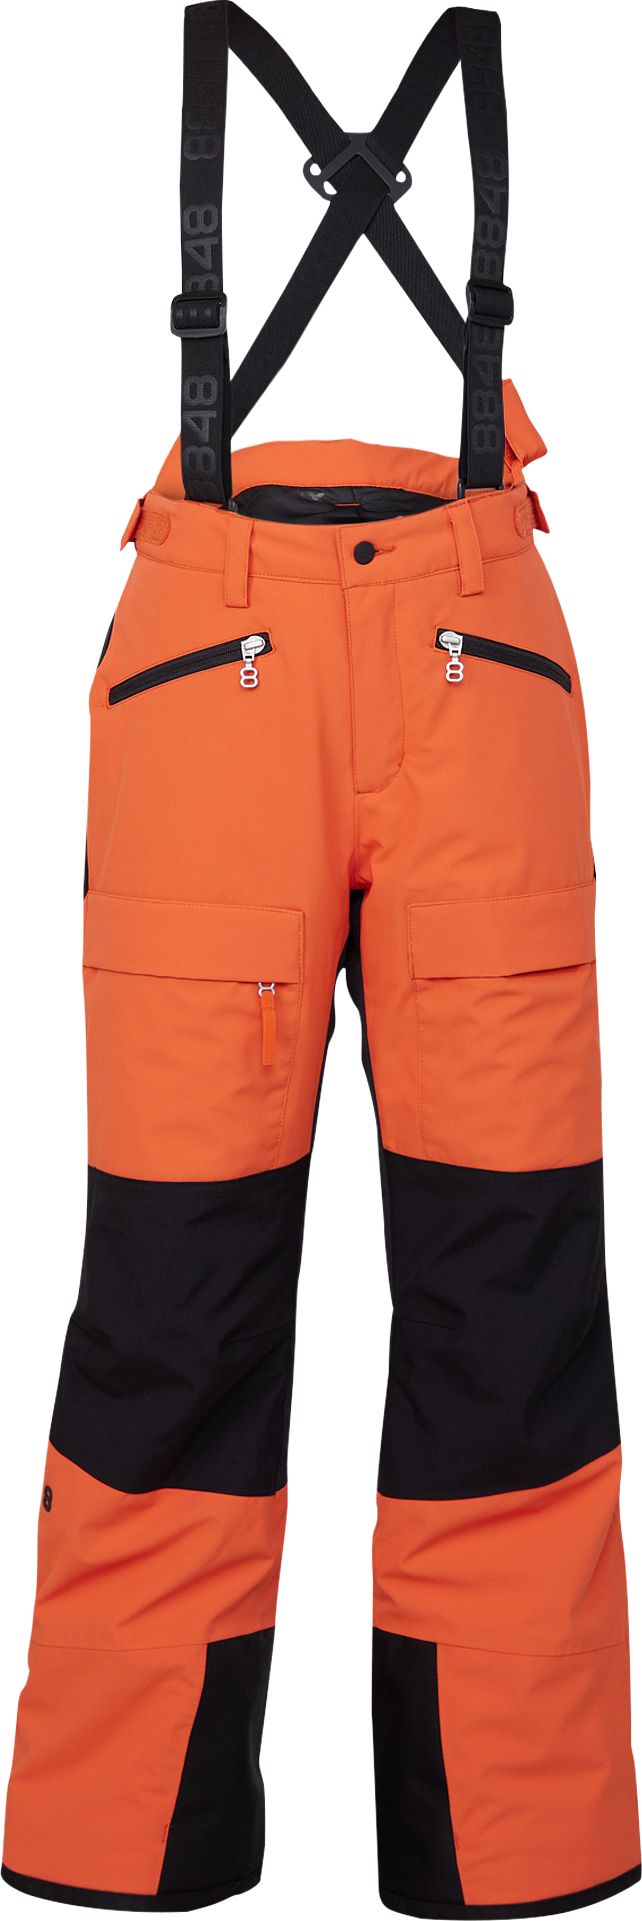 Juniors' Criss Pant Orange Rust 8848 Altitude